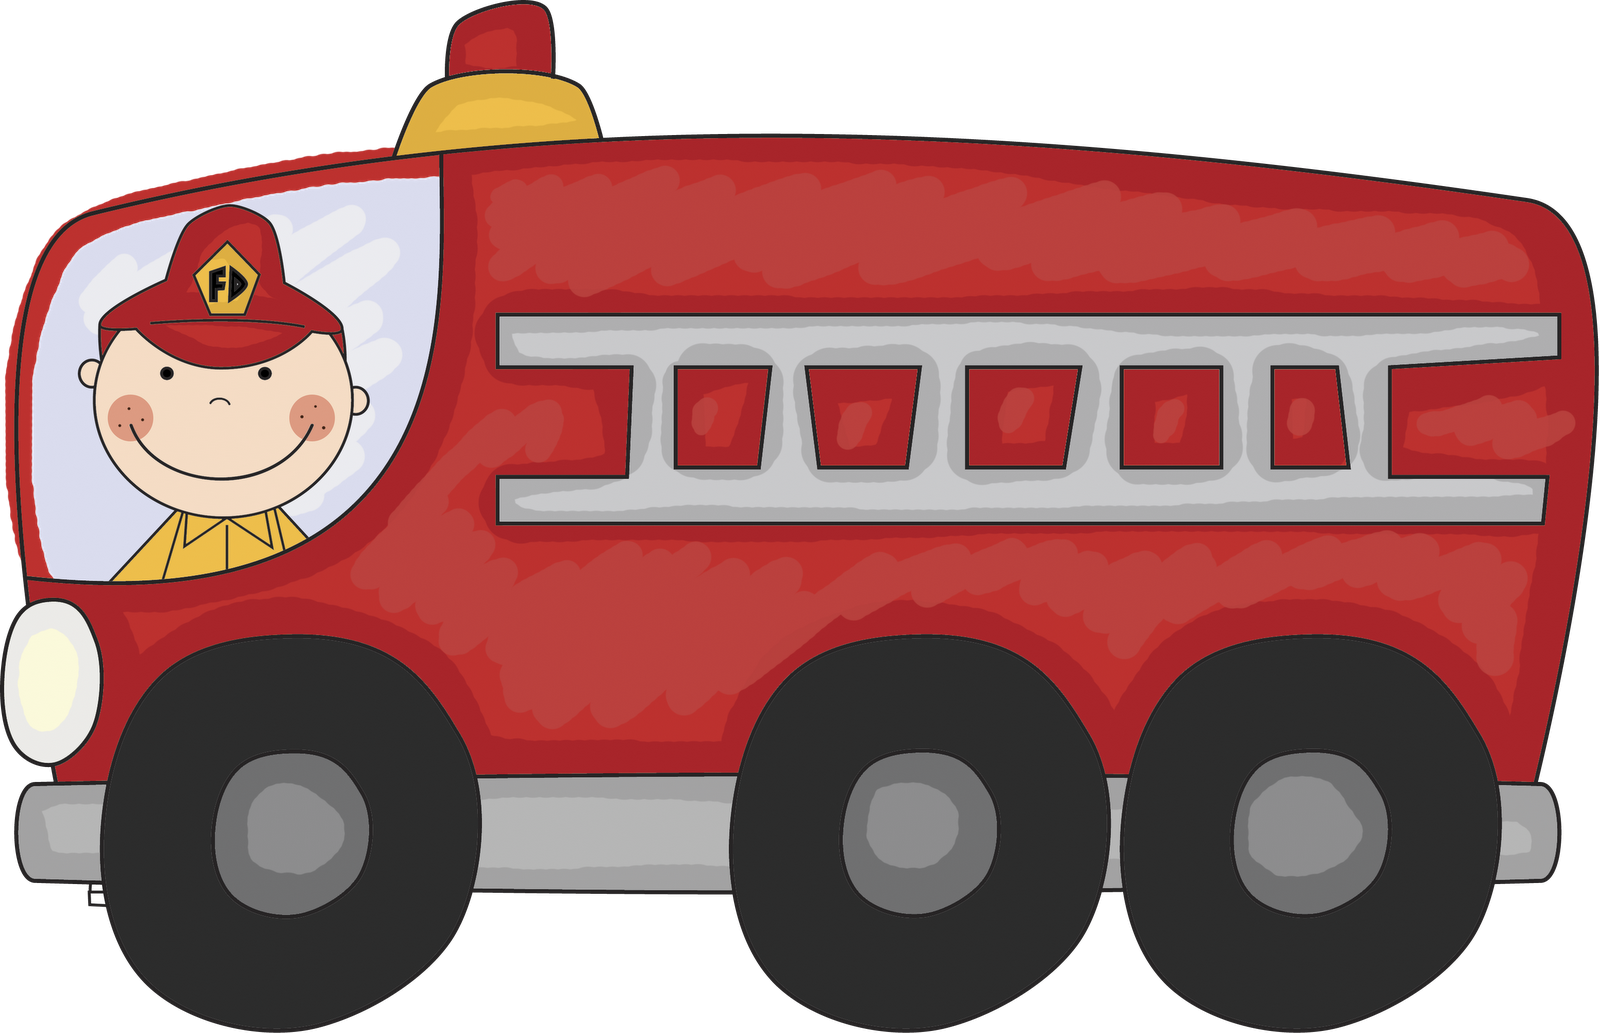 Картинки для детей пожарный на прозрачном фоне. Пожарная машина. Пожарная машина для детей. Пожарная машина мультяшная. Пожарные машины мультяшные.